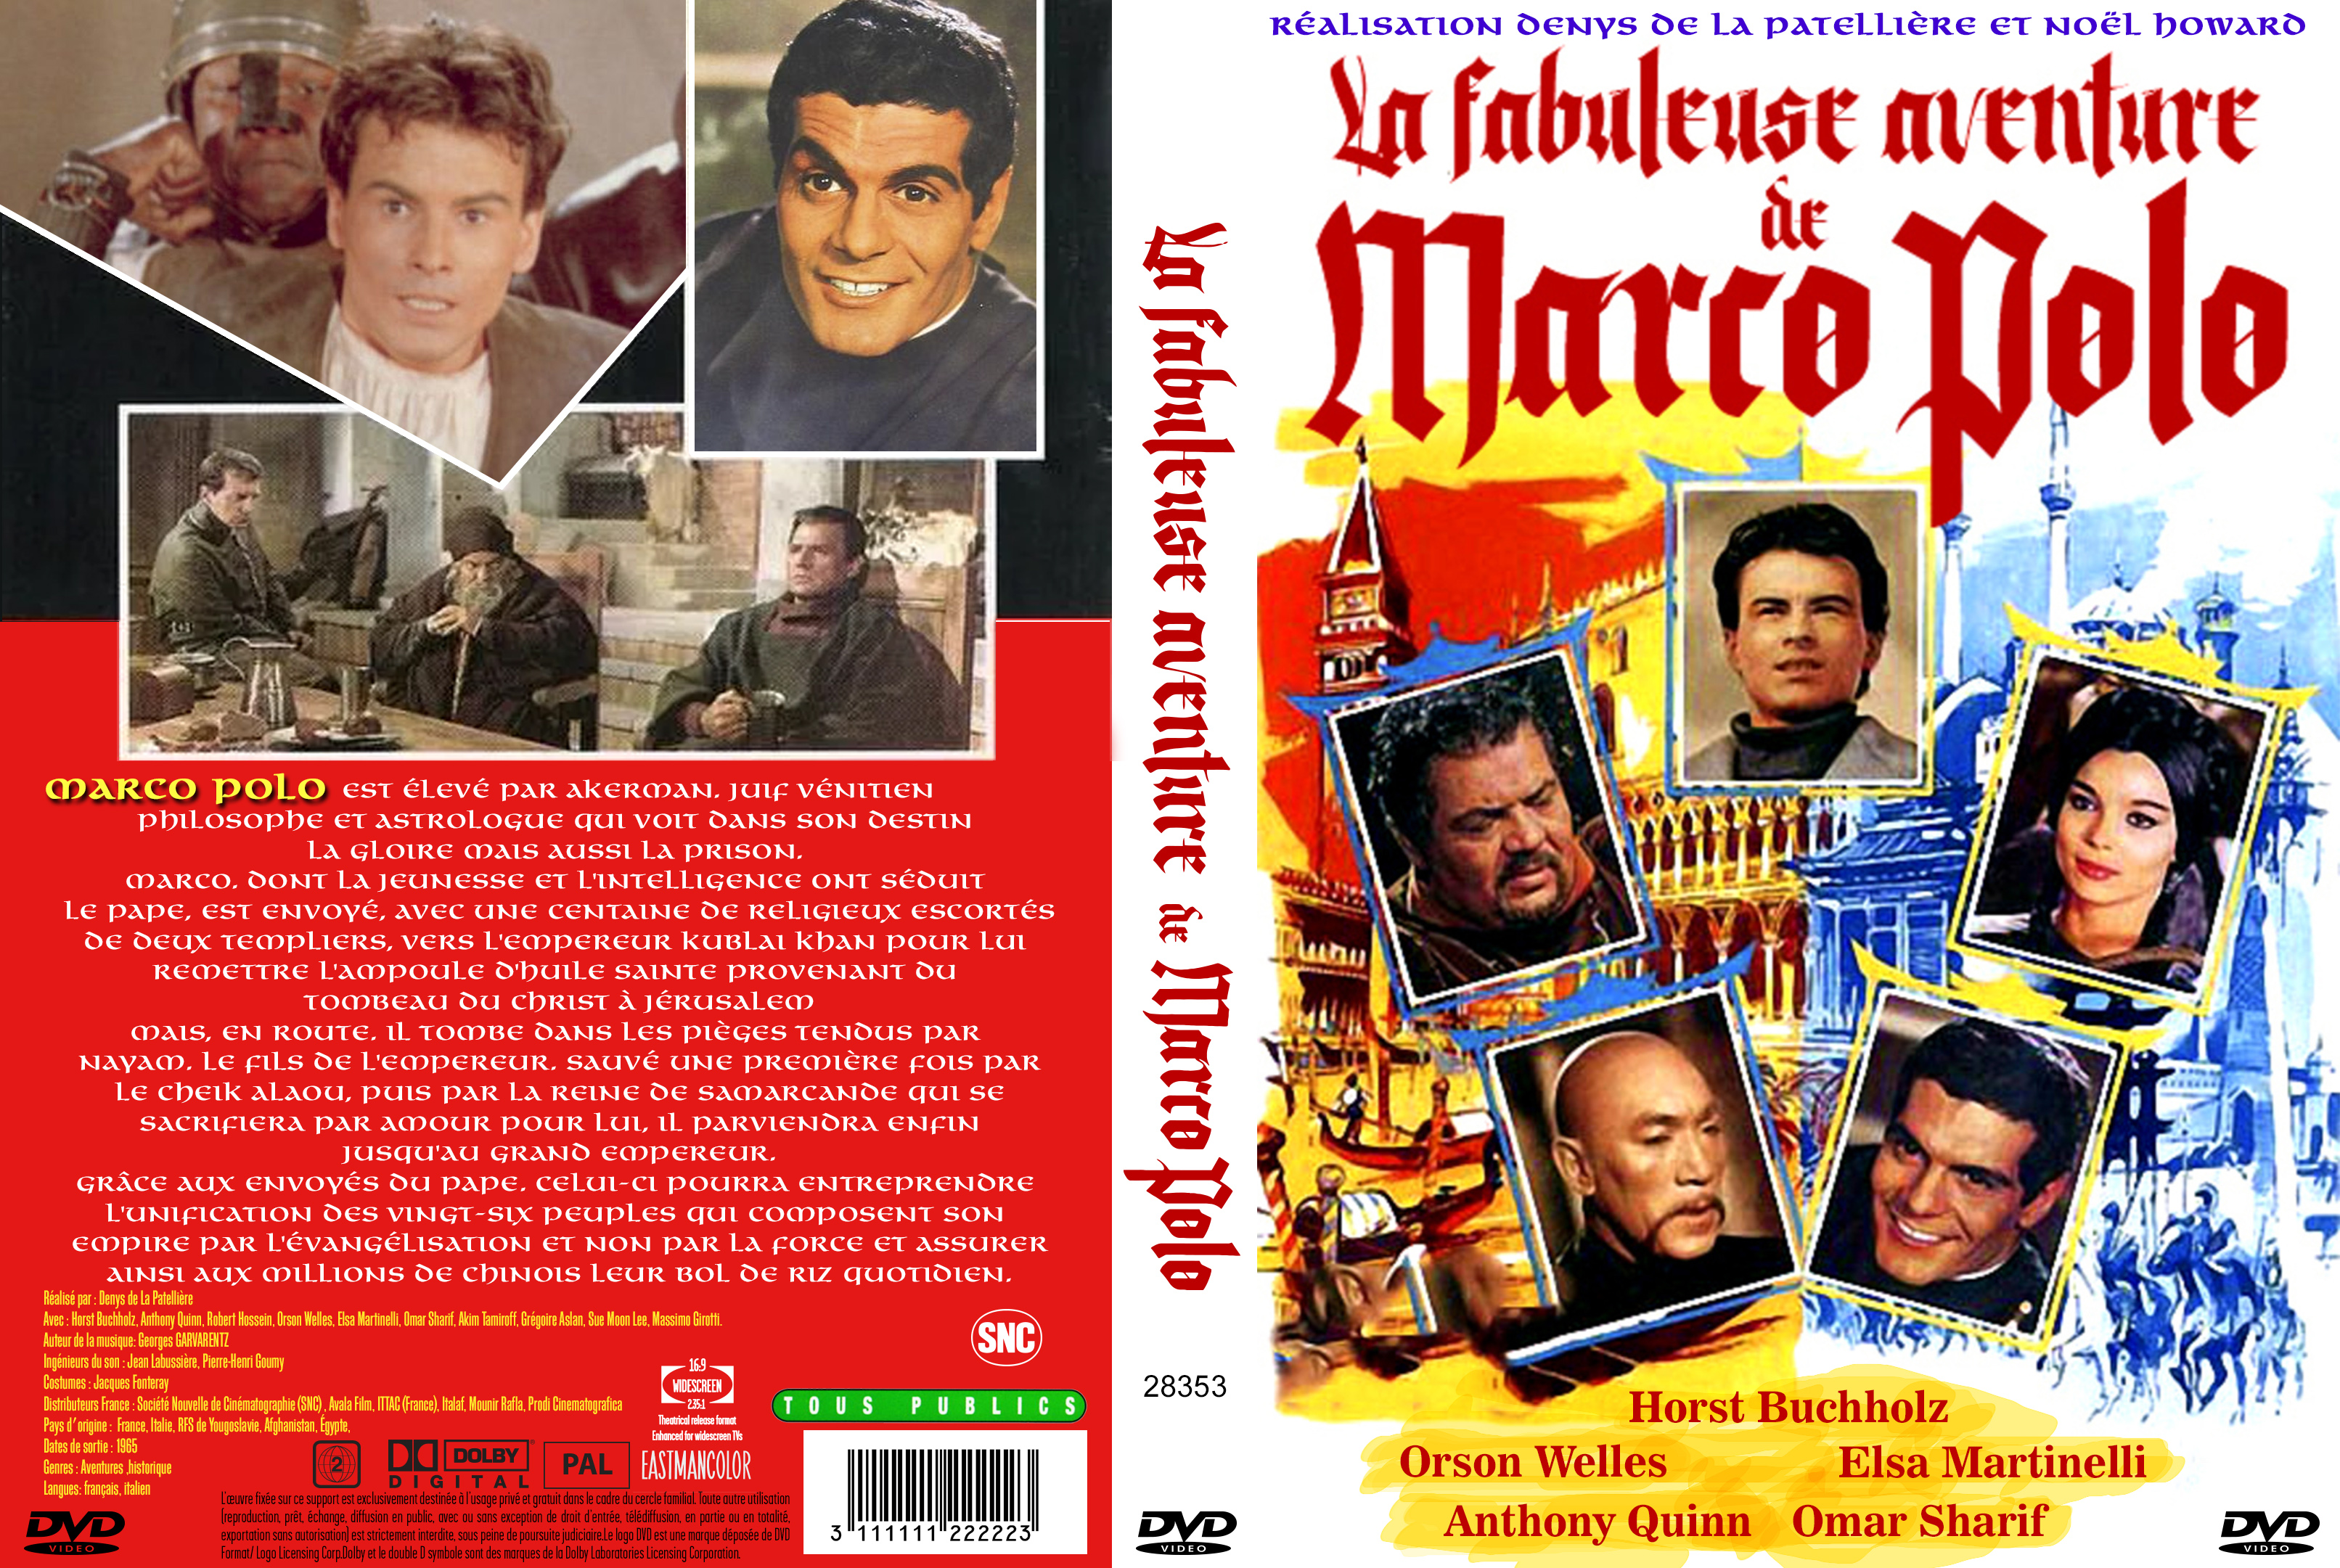 Jaquette DVD La fabuleuse aventure de Marco Polo 1965 custom